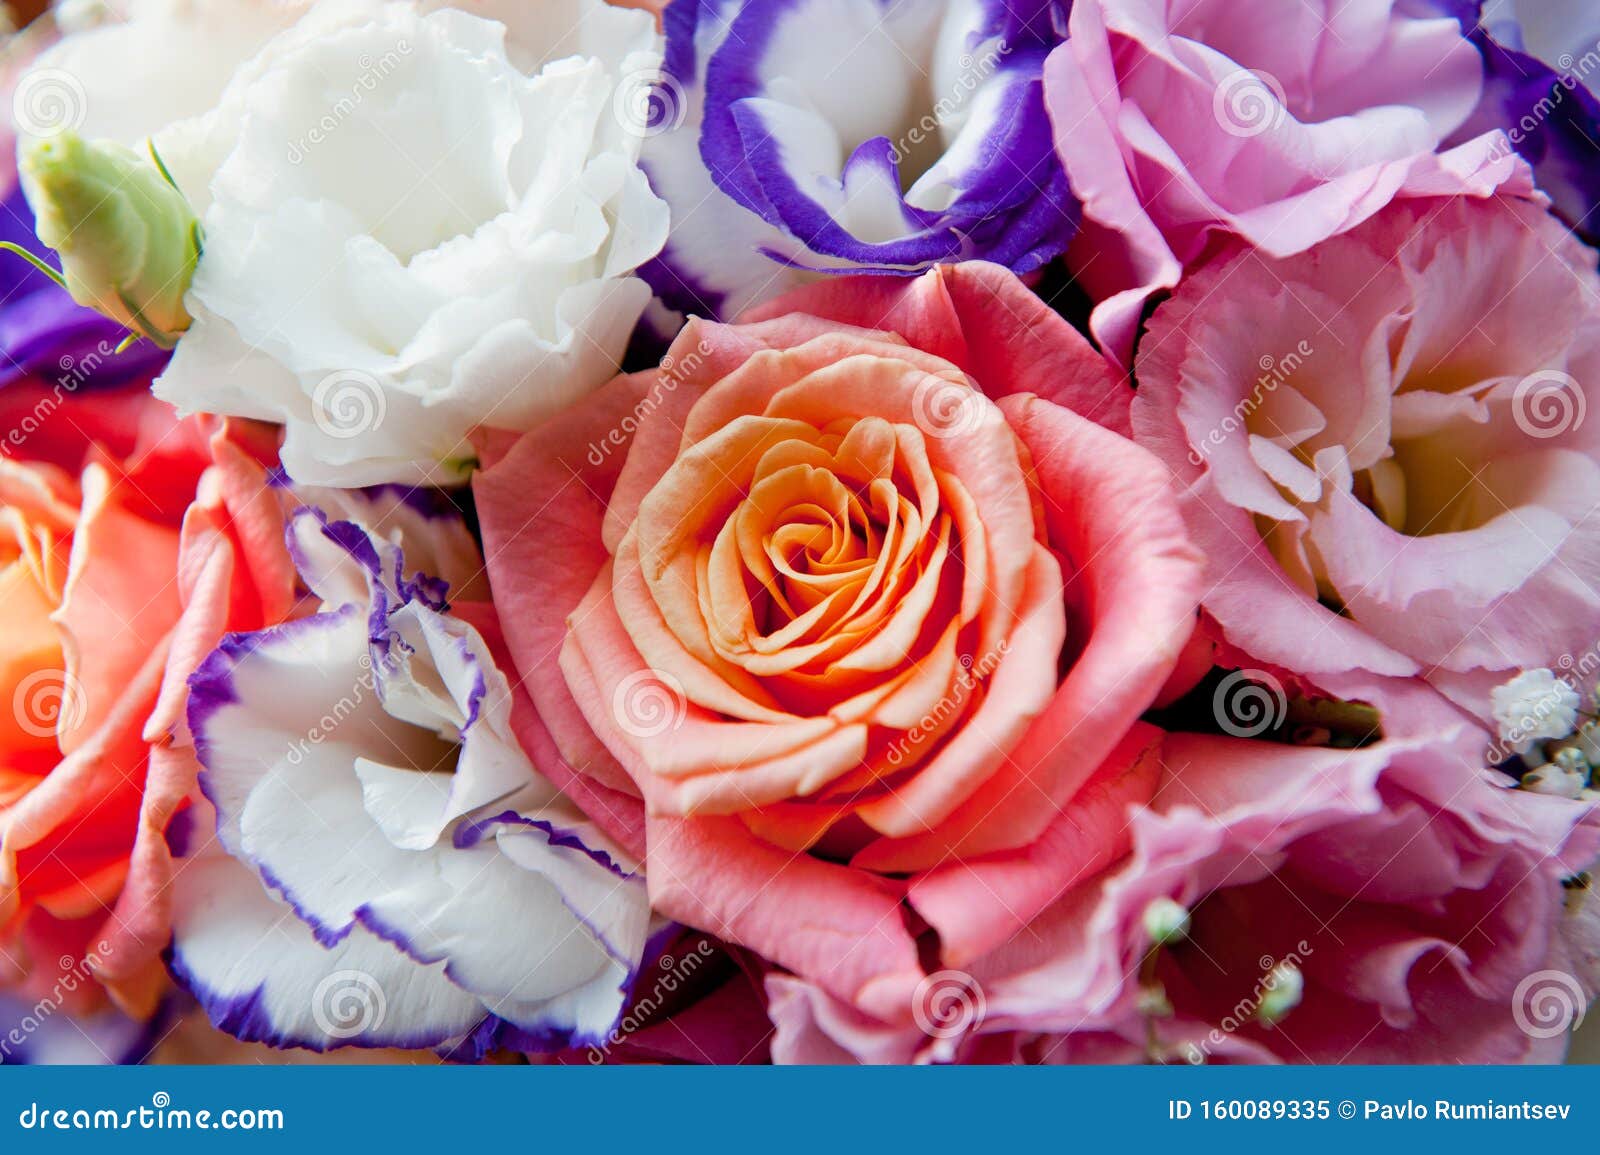 Букет Из Роз Разных Цветов Фото